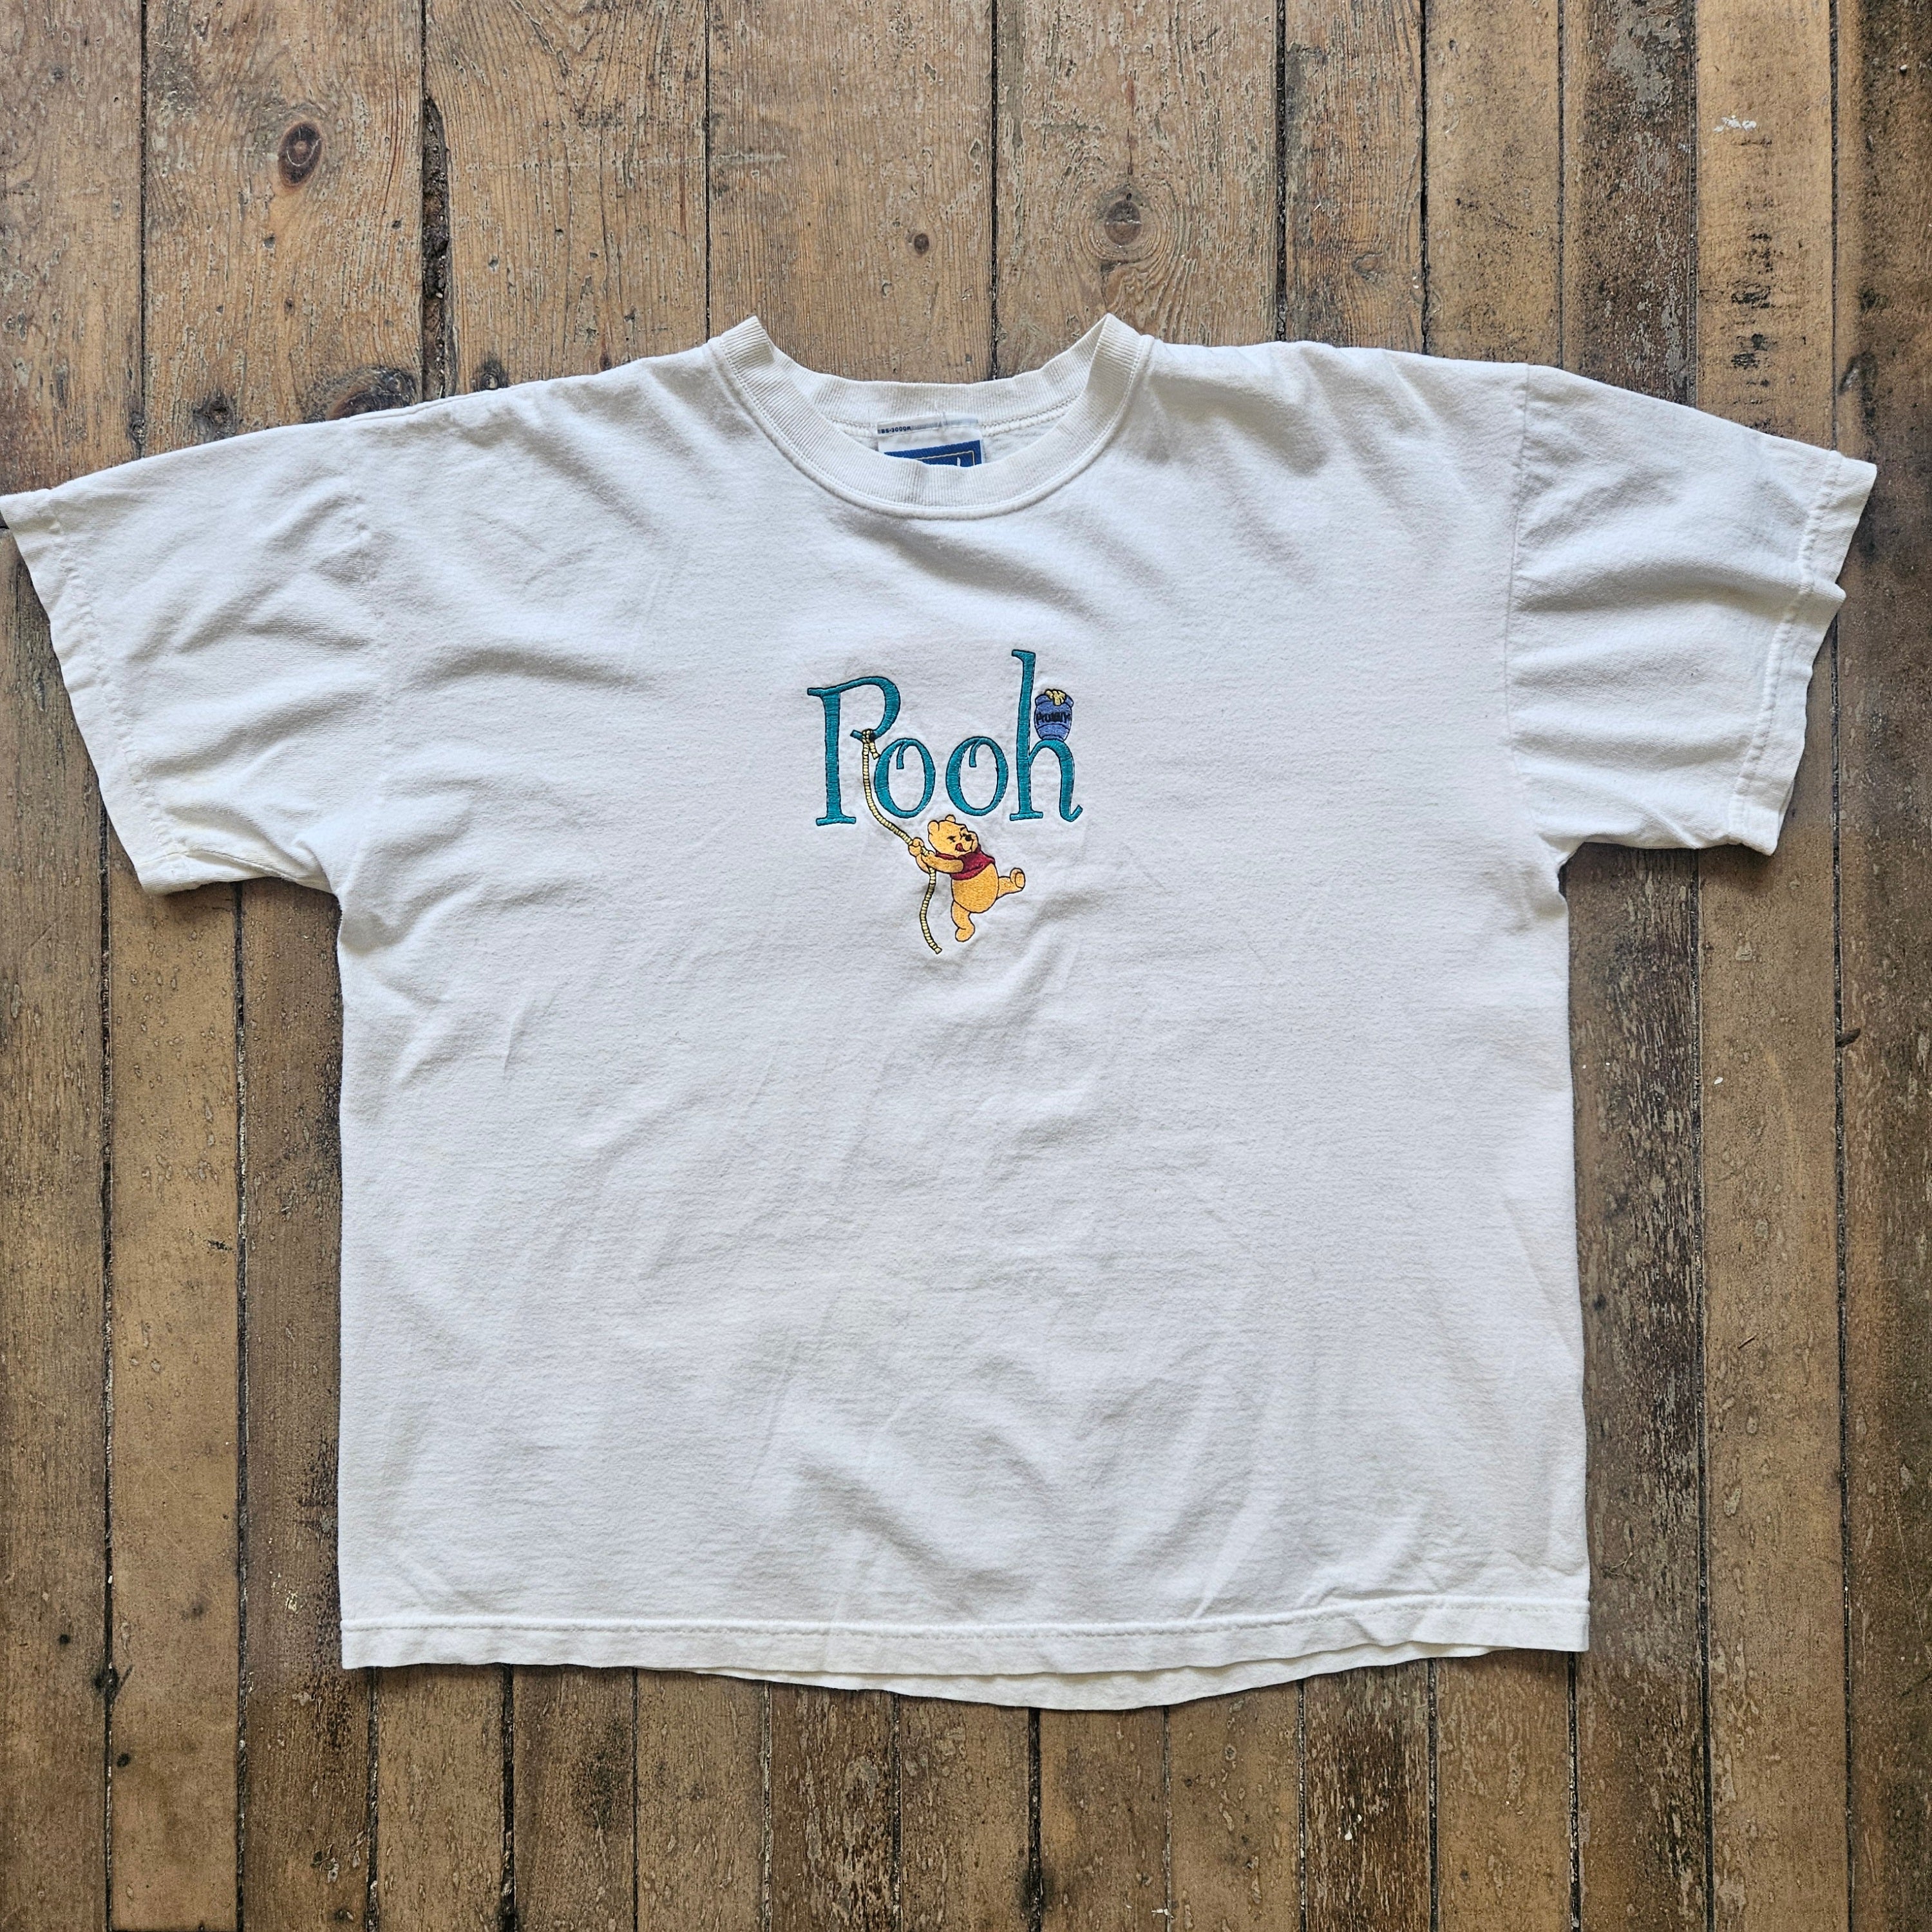 1990’s Winnie the Pooh T Shirt